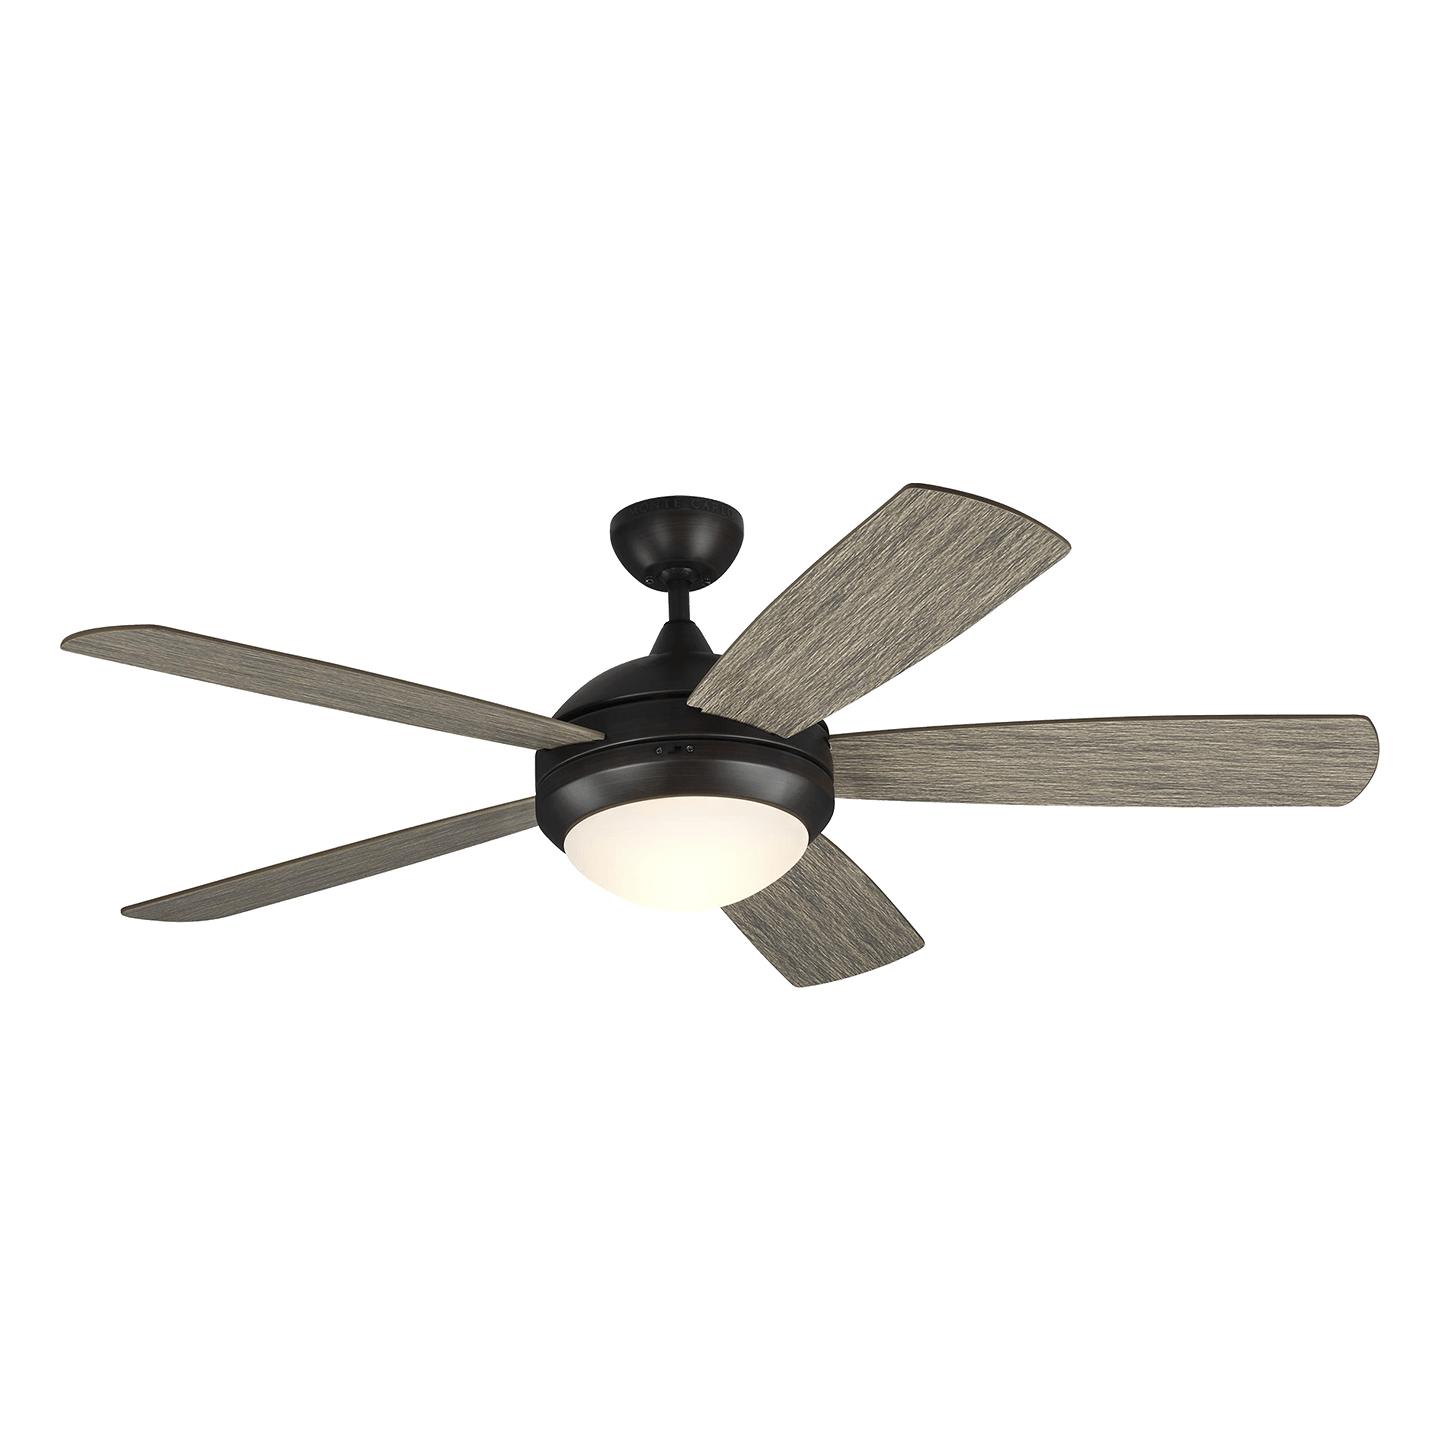 Купить Потолочный вентилятор Discus Smart 52" Ceiling Fan в интернет-магазине roooms.ru